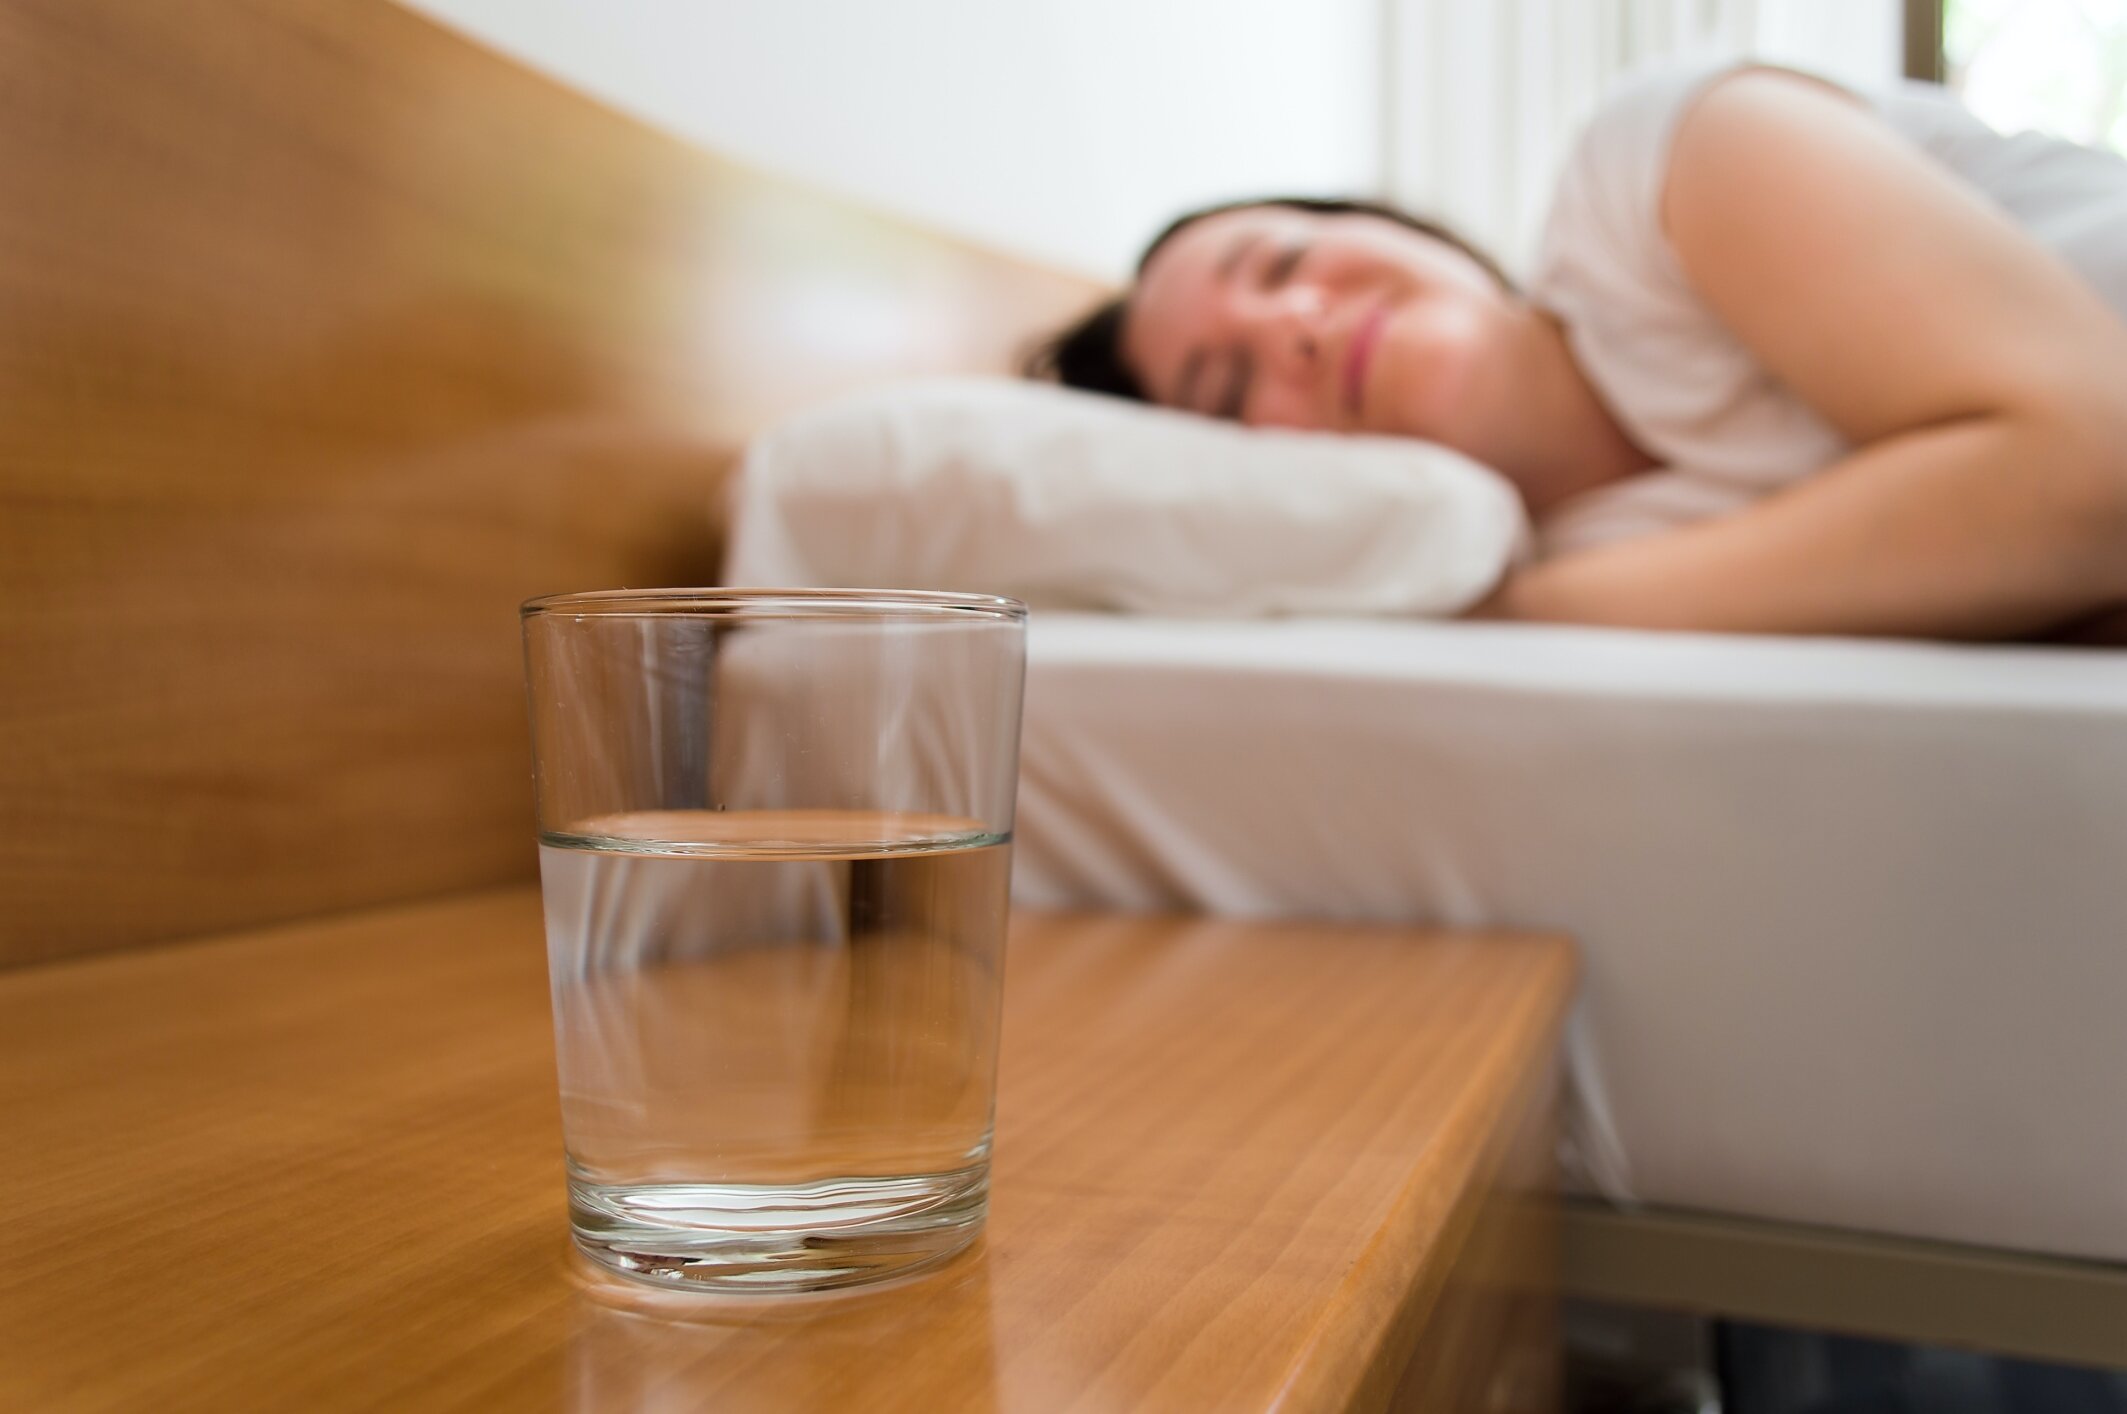 Nhiều người cho rằng, uống một cốc nước trước khi đi ngủ sẽ tránh cô đặc máu, từ đó giảm nguy cơ đột quỵ. (Ảnh minh hoạ)